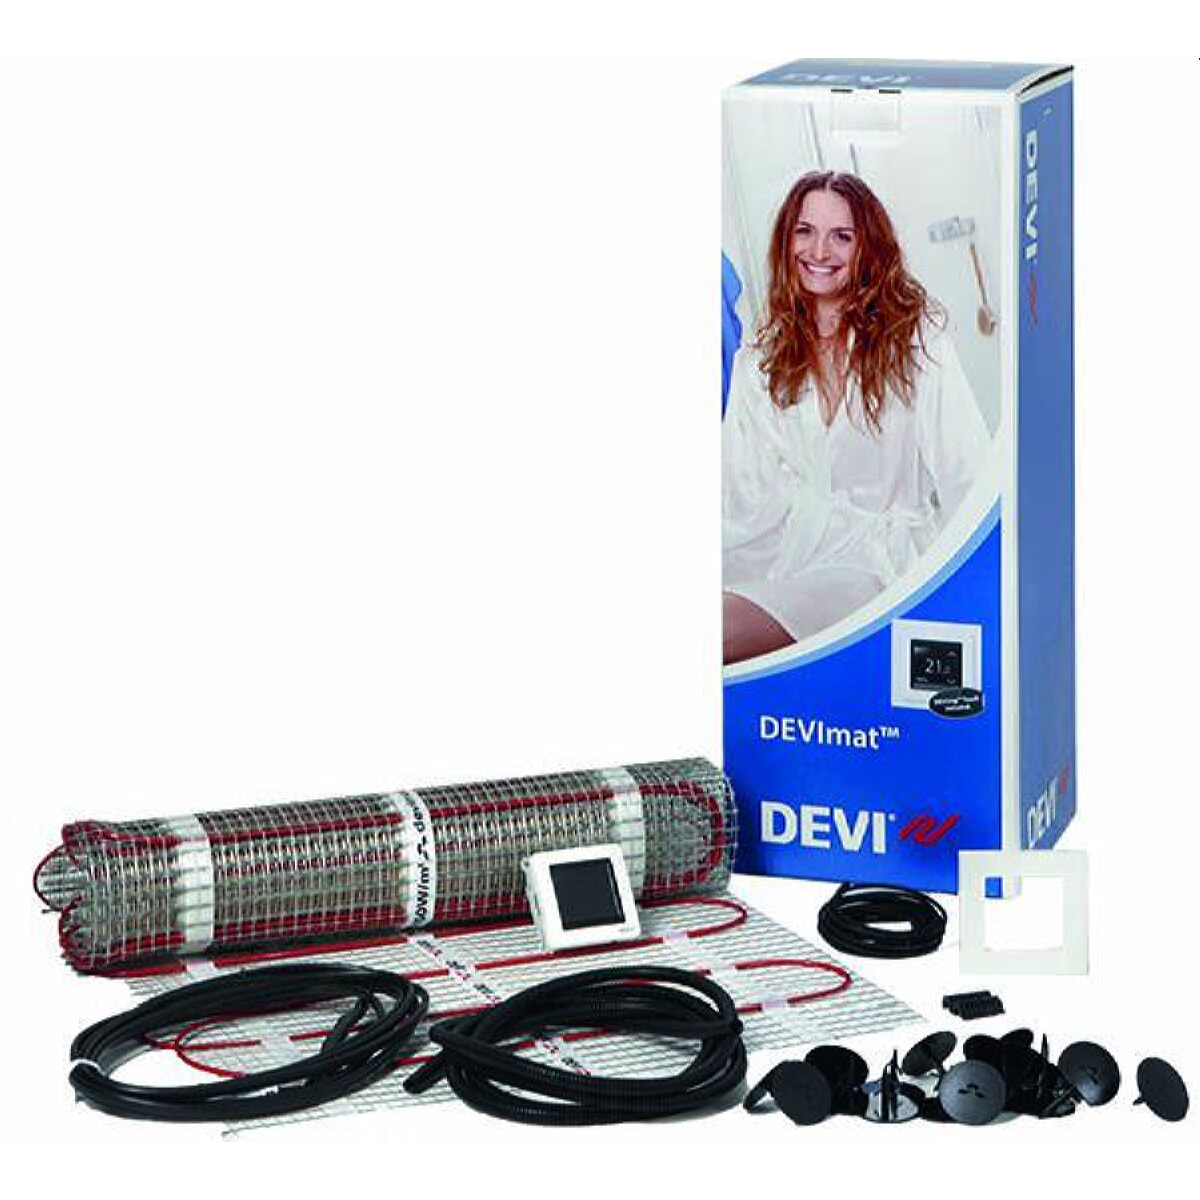 DEVI Dünnbett-Set mit Devireg Touch 1050 W professional DTIF 7,0 qm 140F0825